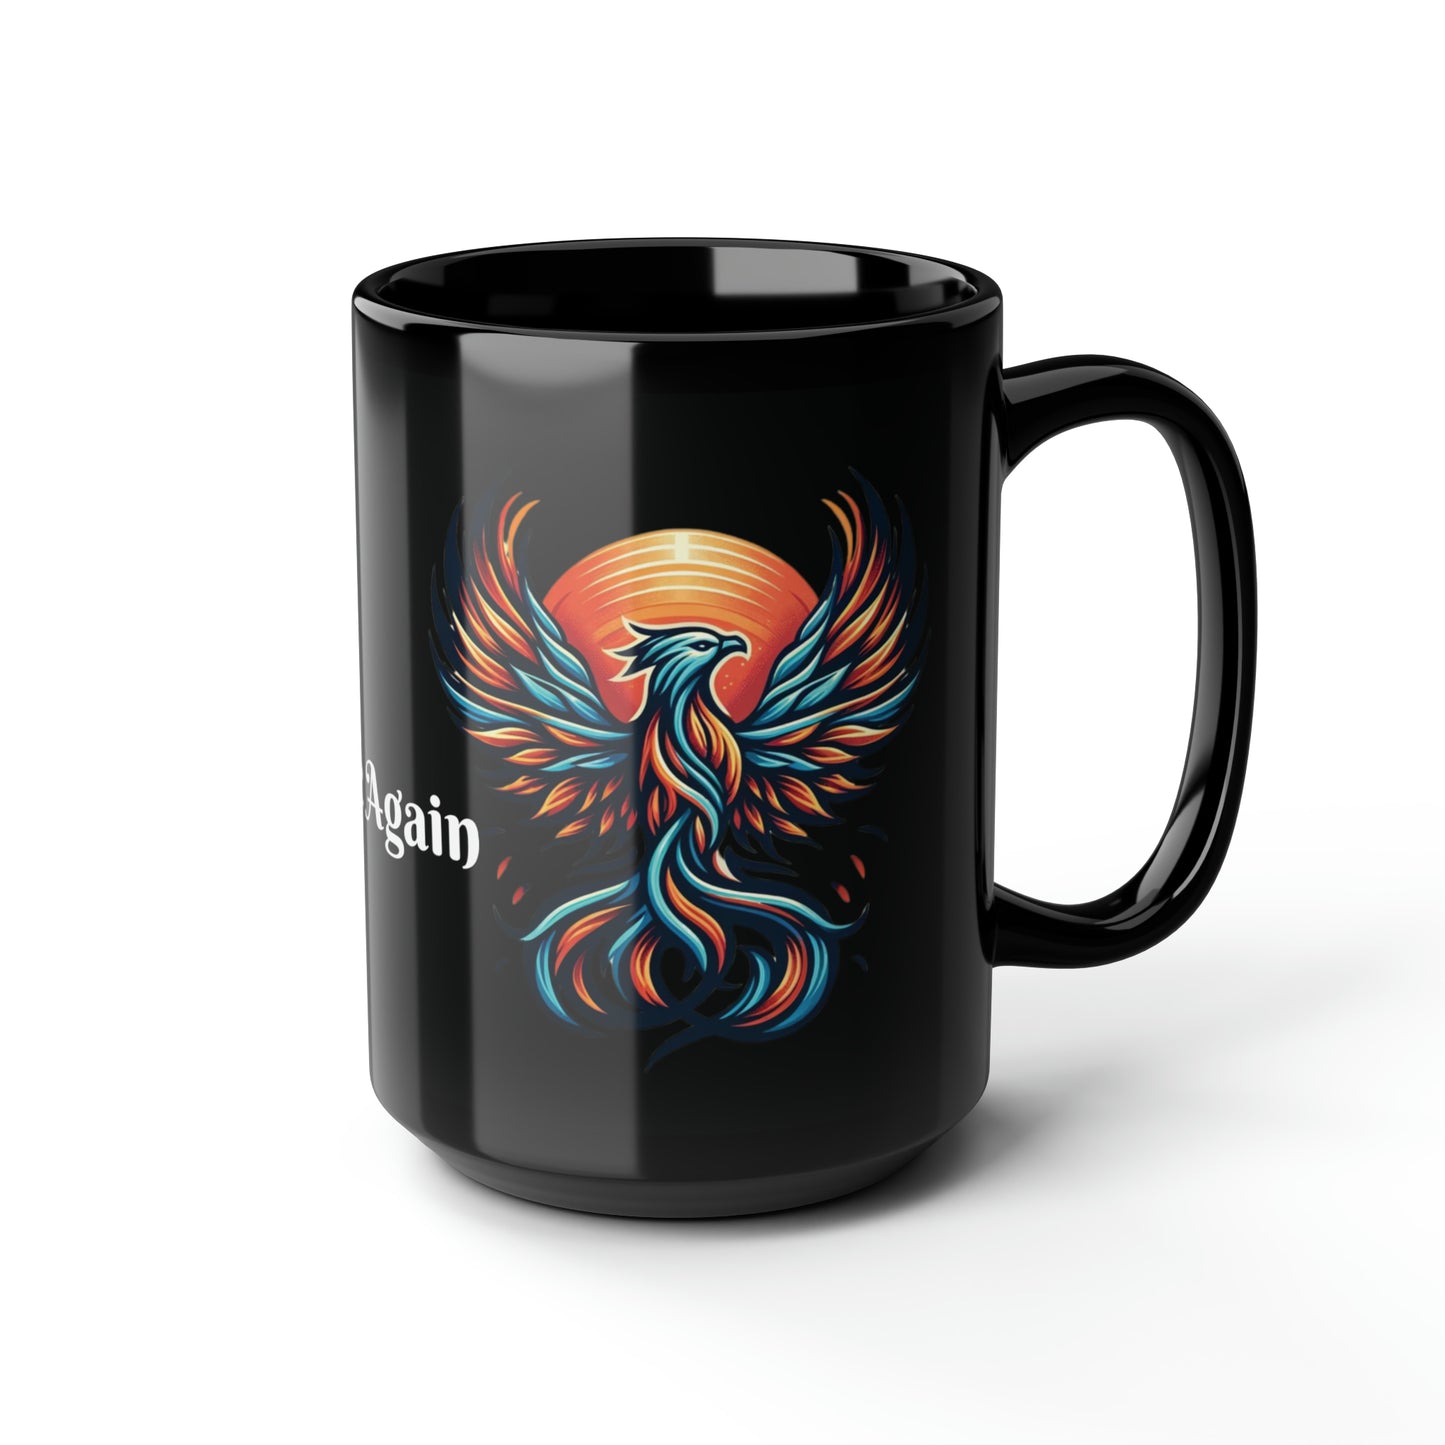 Phoenix Dawn Coffee Mug: "Rise Again" with Every Sip | Black Ceramic Mug (11oz, 15oz)